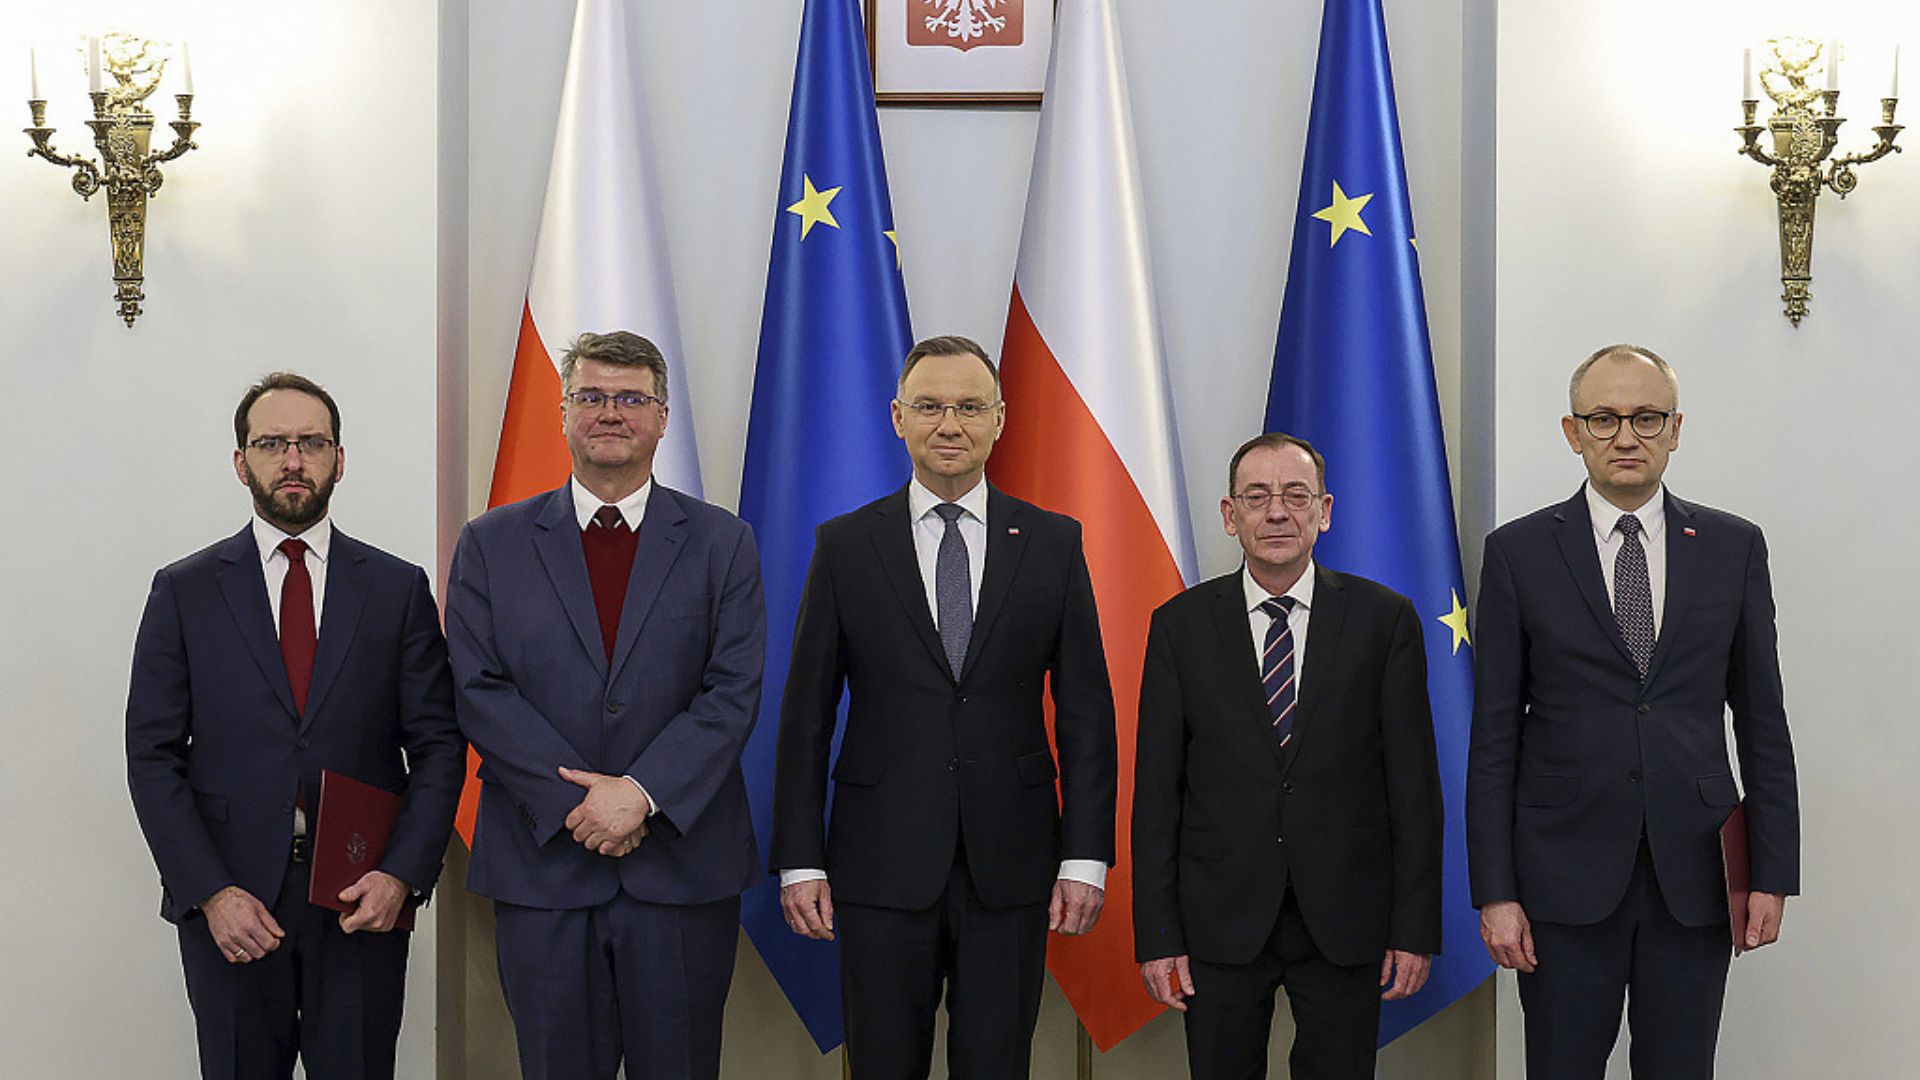 Poland's President Andrzej Duda, center, is flanked by Maciej Wasik (center left) and Mariusz Kaminski (center right). /Jakub Szymczuk/President Palace